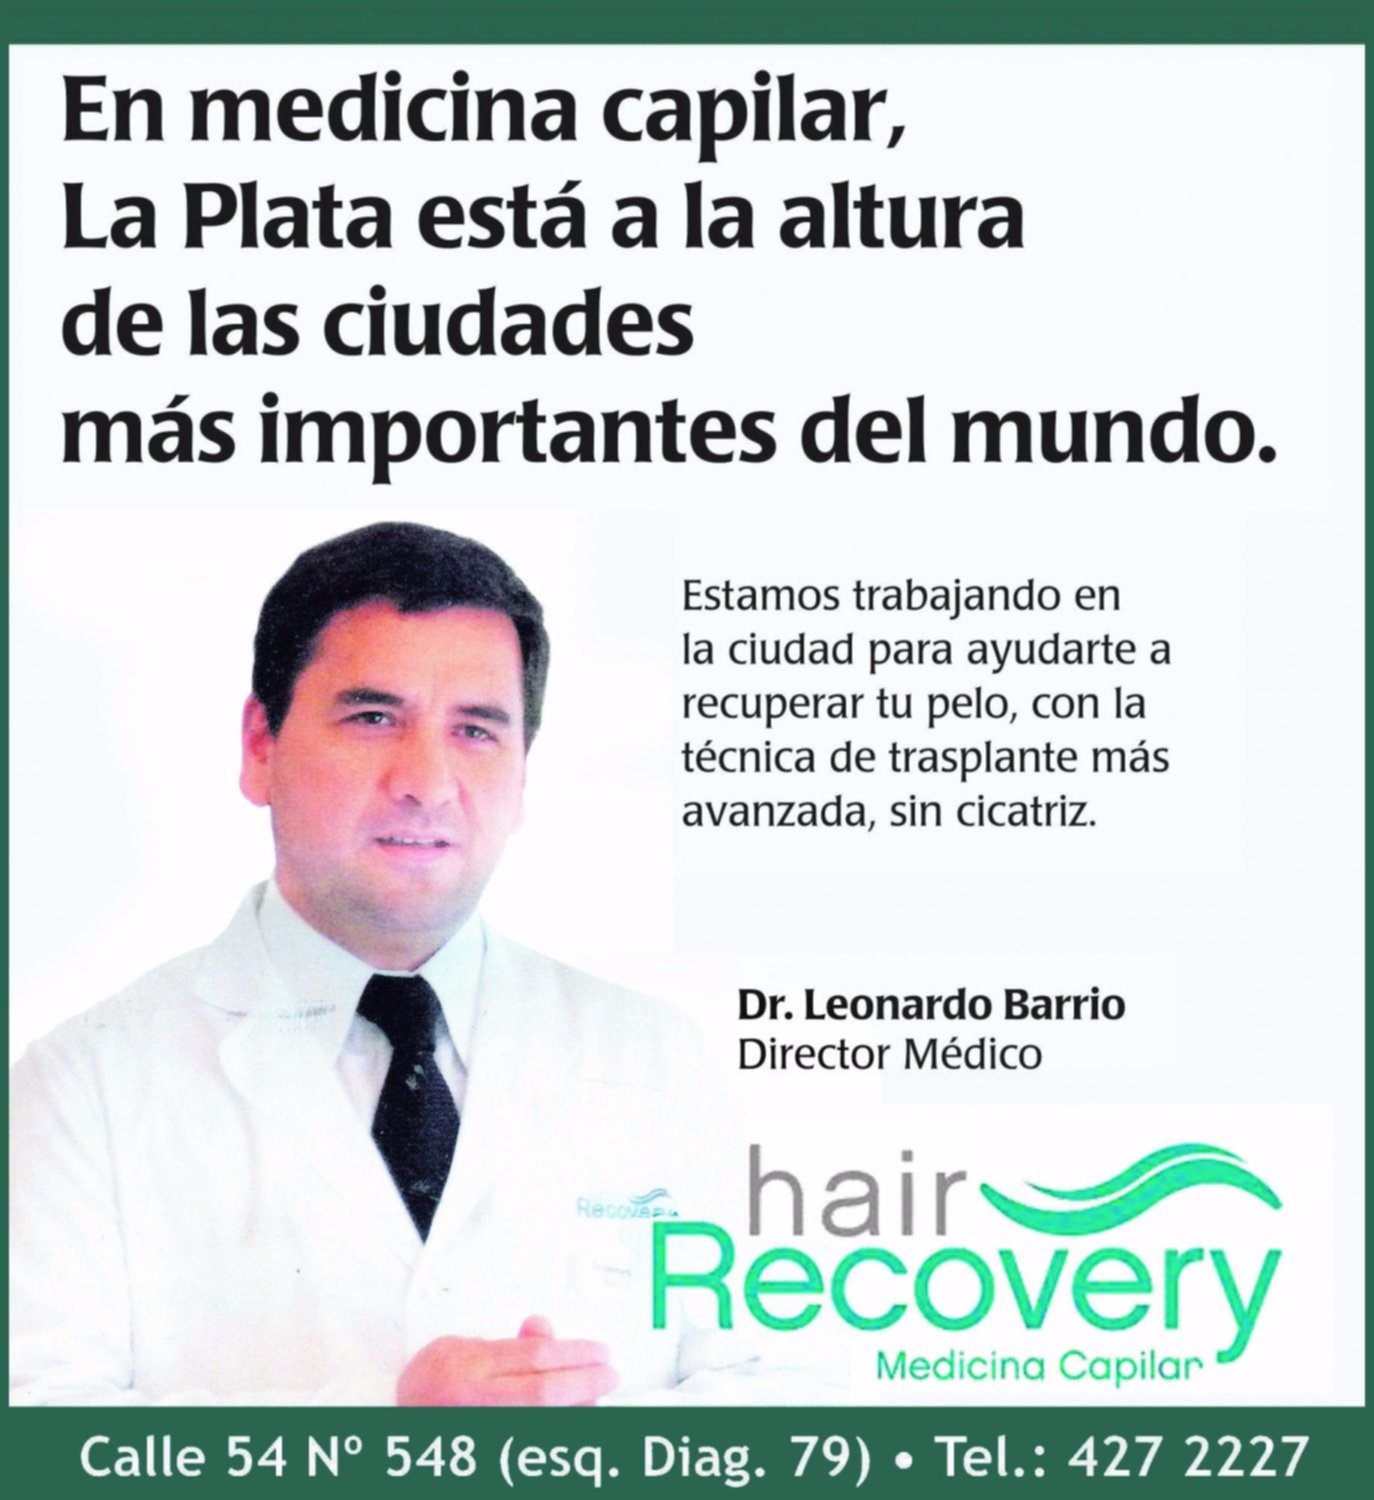 Hair Recovery: Lo mejor en medicina capital